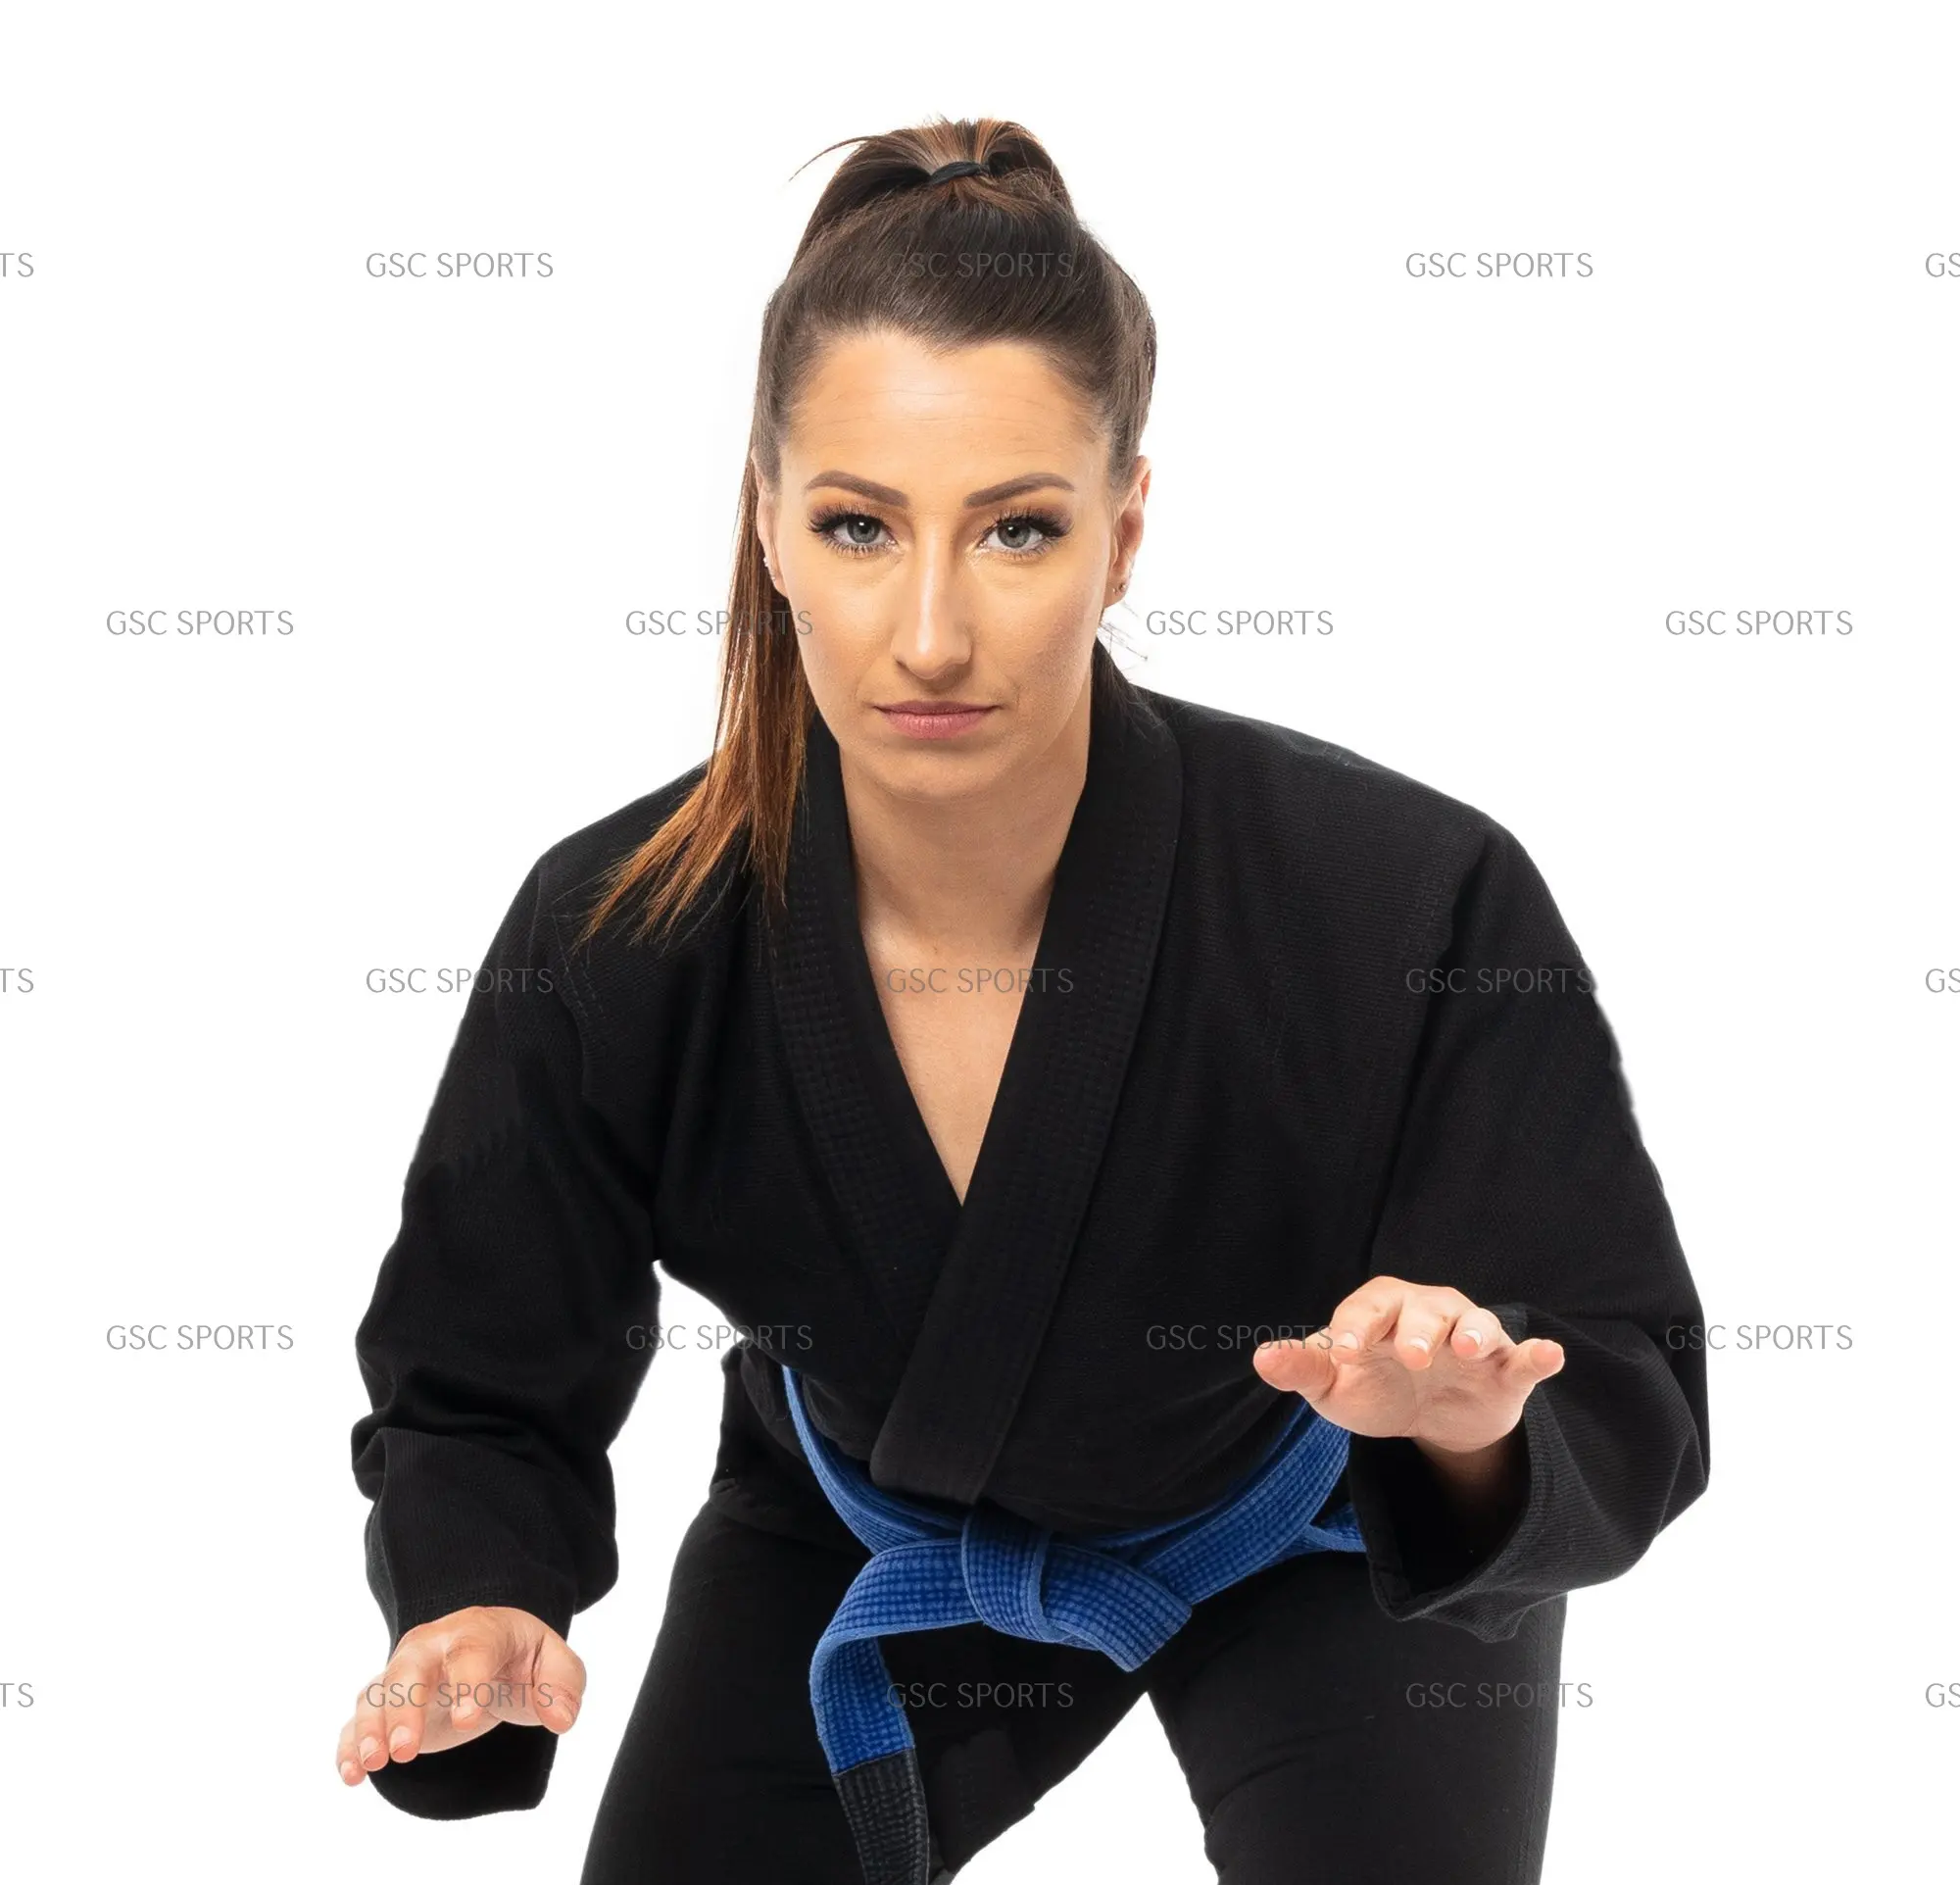 Phụ Nữ Tùy Chỉnh Jiu Jitsu Đồng Phục Với Chất Lượng Cao Phù Hợp Và Thiết Kế Womens Bjj Gis Giá Rẻ Giá Bán Buôn Bjj Gis